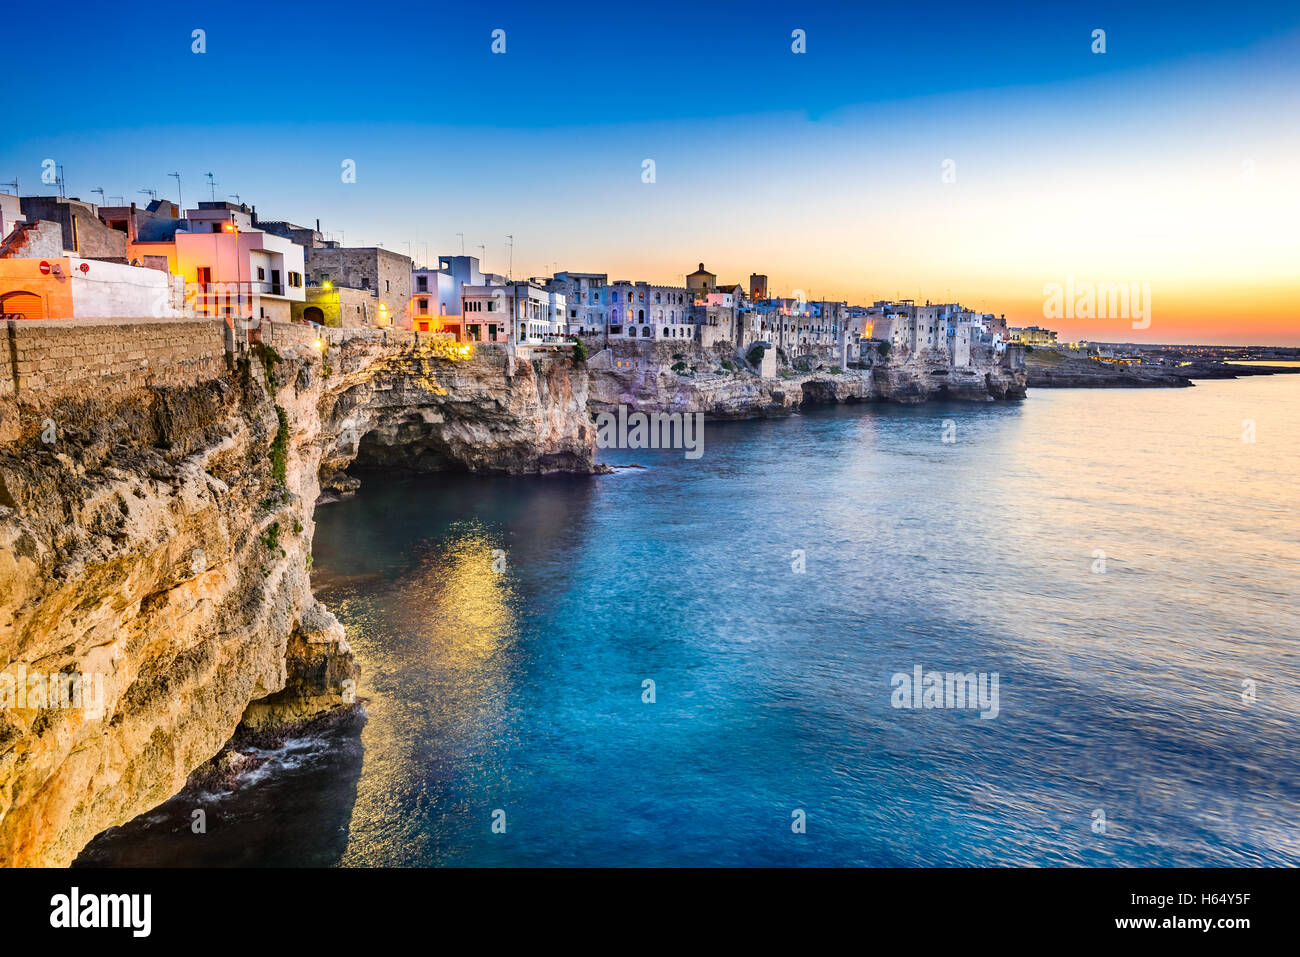 La puglia, Italia. Sunset scenario di Polignano a Mare, cittadina in provincia di bari, puglia, Italia meridionale del Mare Adriatico. Foto Stock